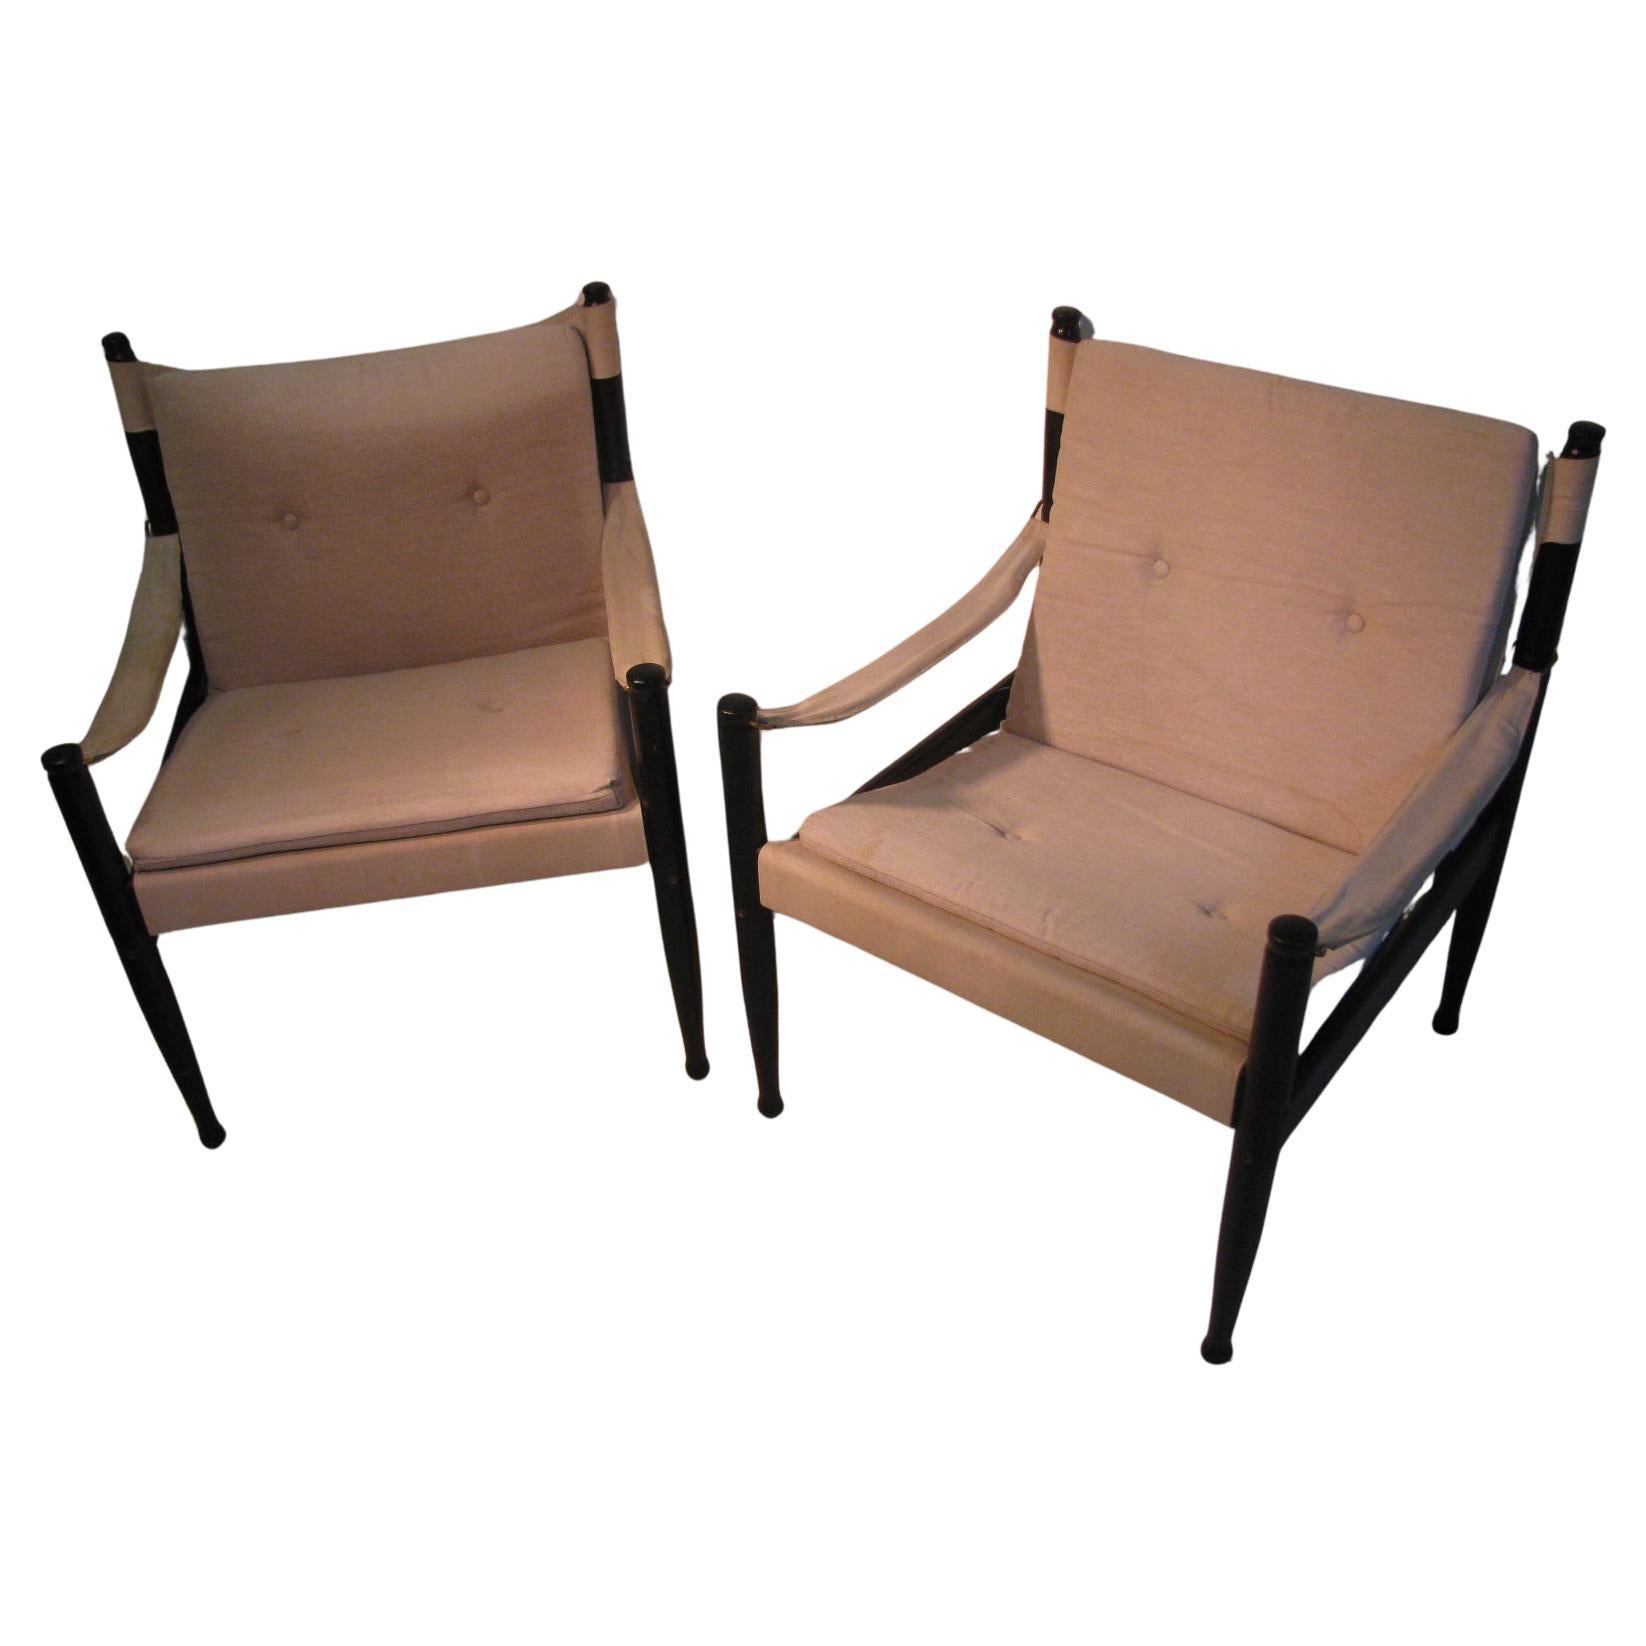 Wunderschönes Paar Safari-Sessel von Erik Worts für Niels Eilersen. Schwarz emailliert mit Segeltuchpolsterung, Stühle sind in sehr gutem Zustand mit einigen Wasserflecken auf dem Segeltuch.